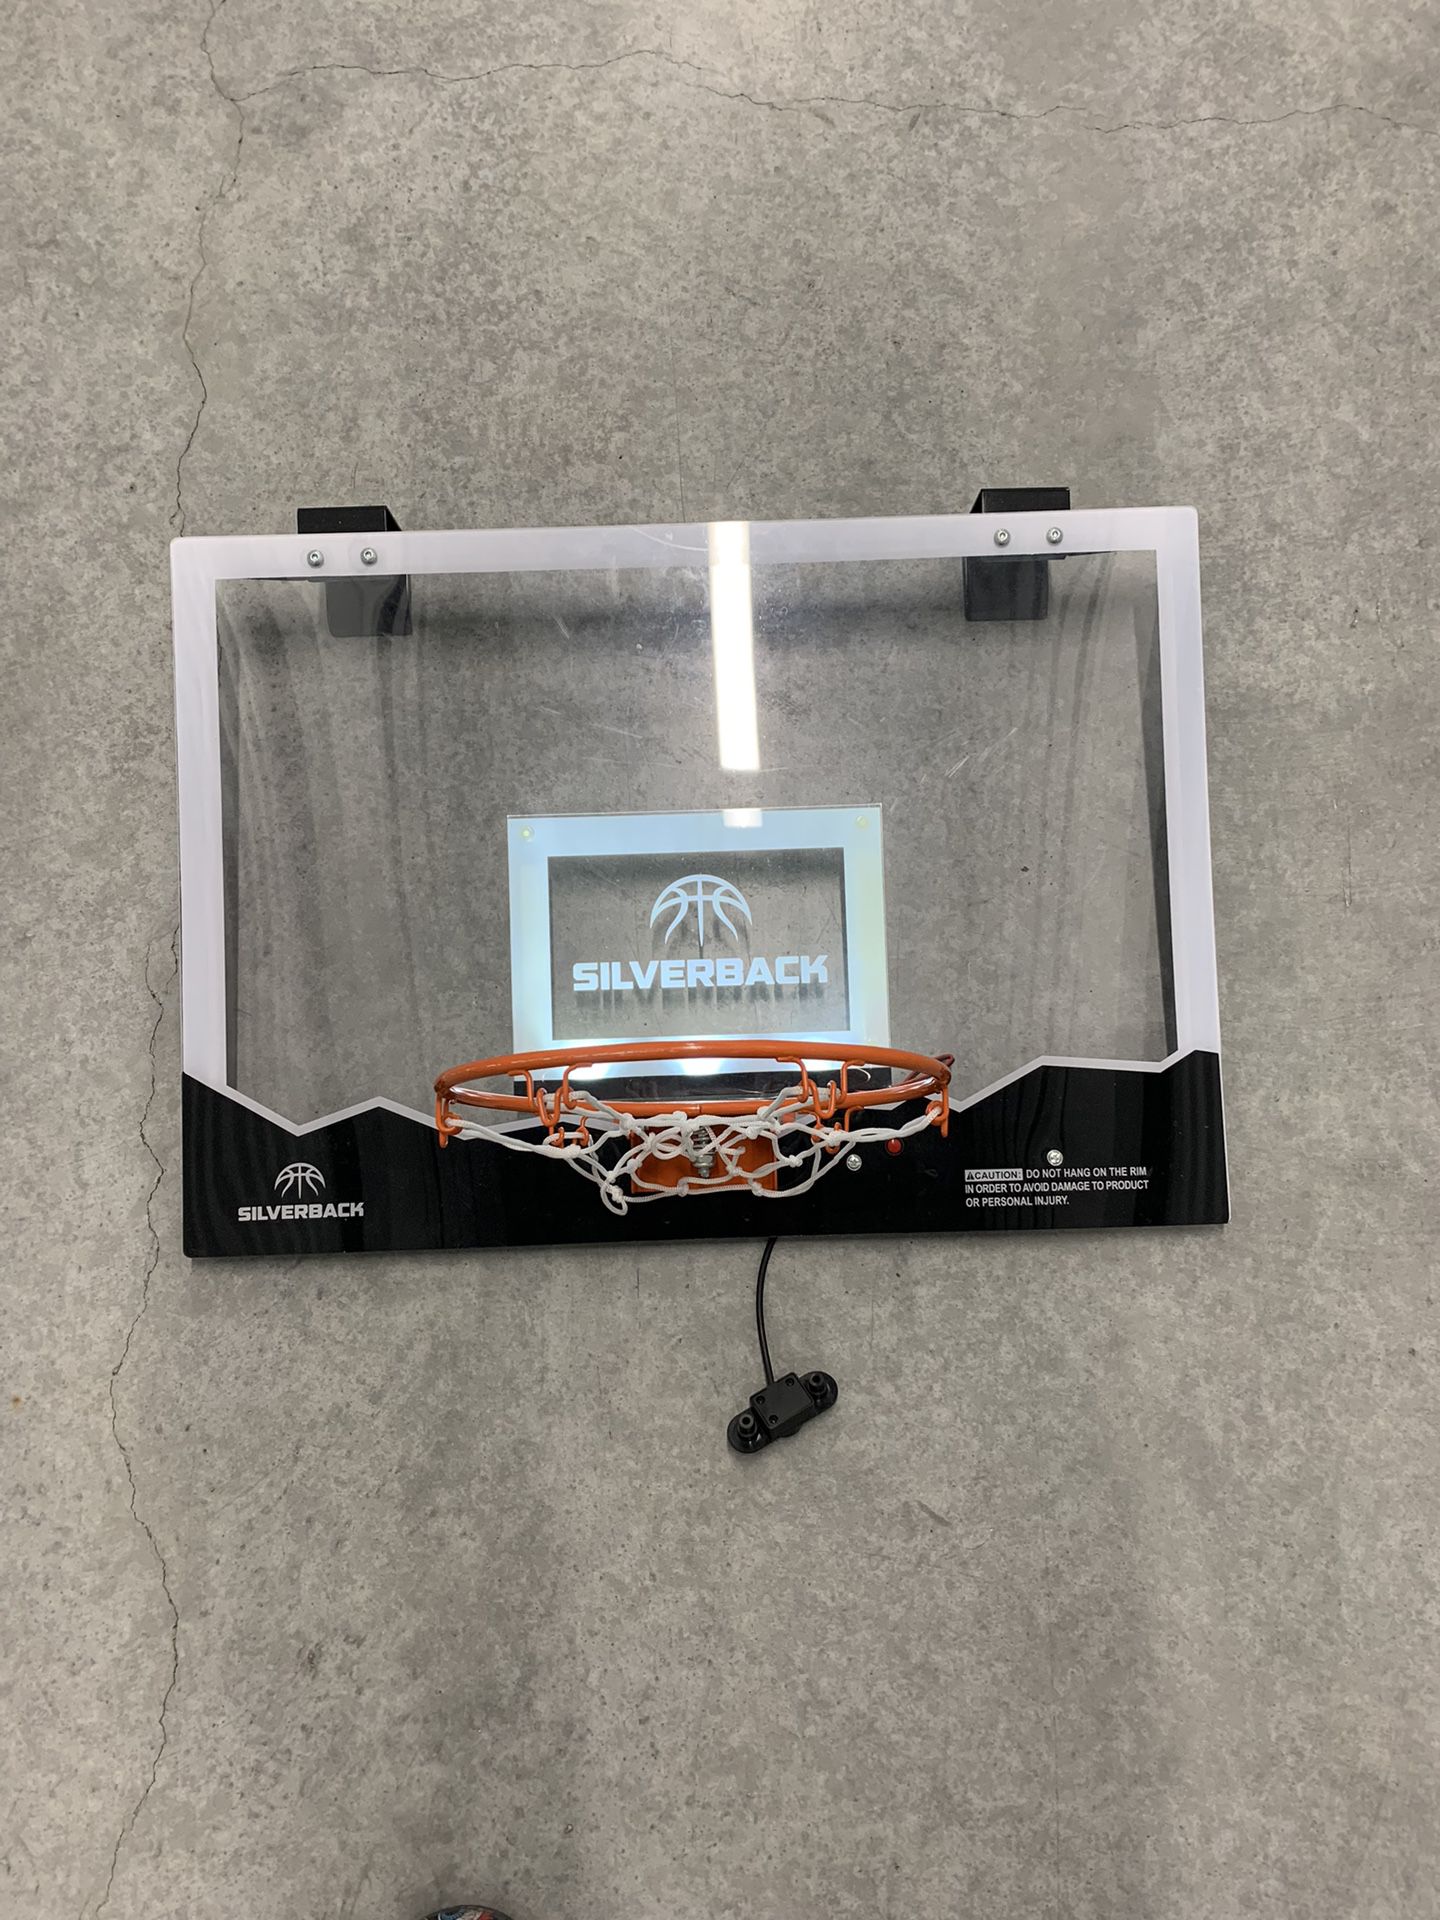 Led Basketball Hoop